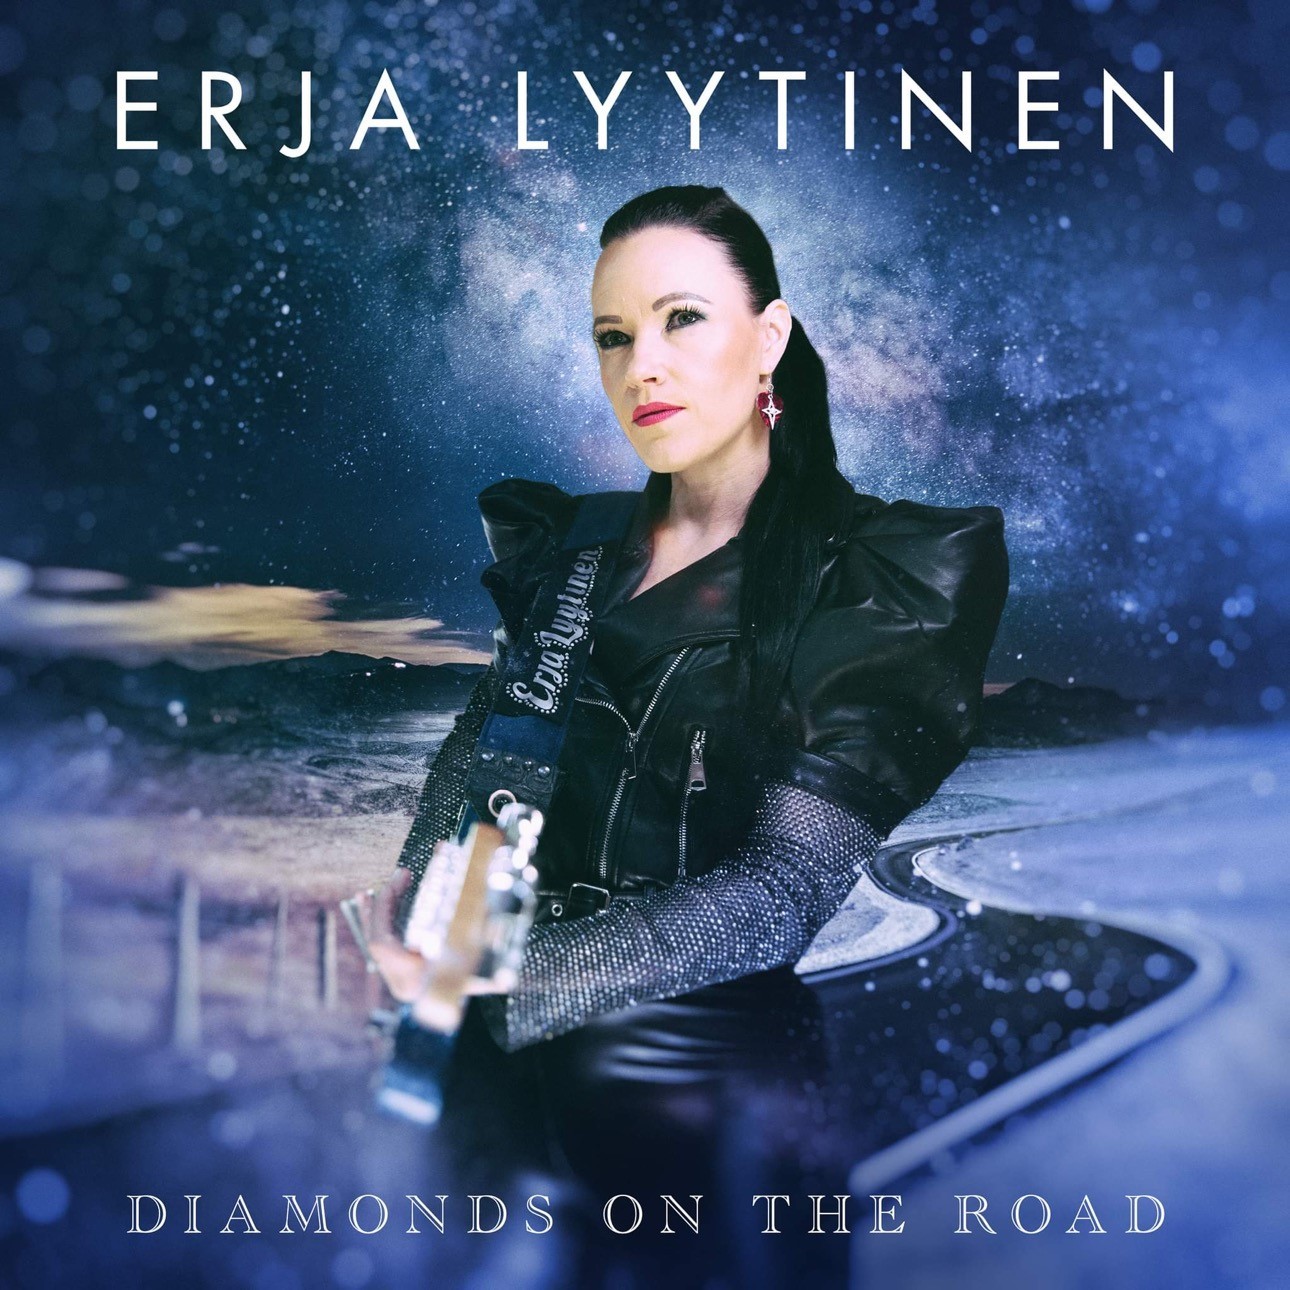 Erja Lyytinen - Diamonds On The Road